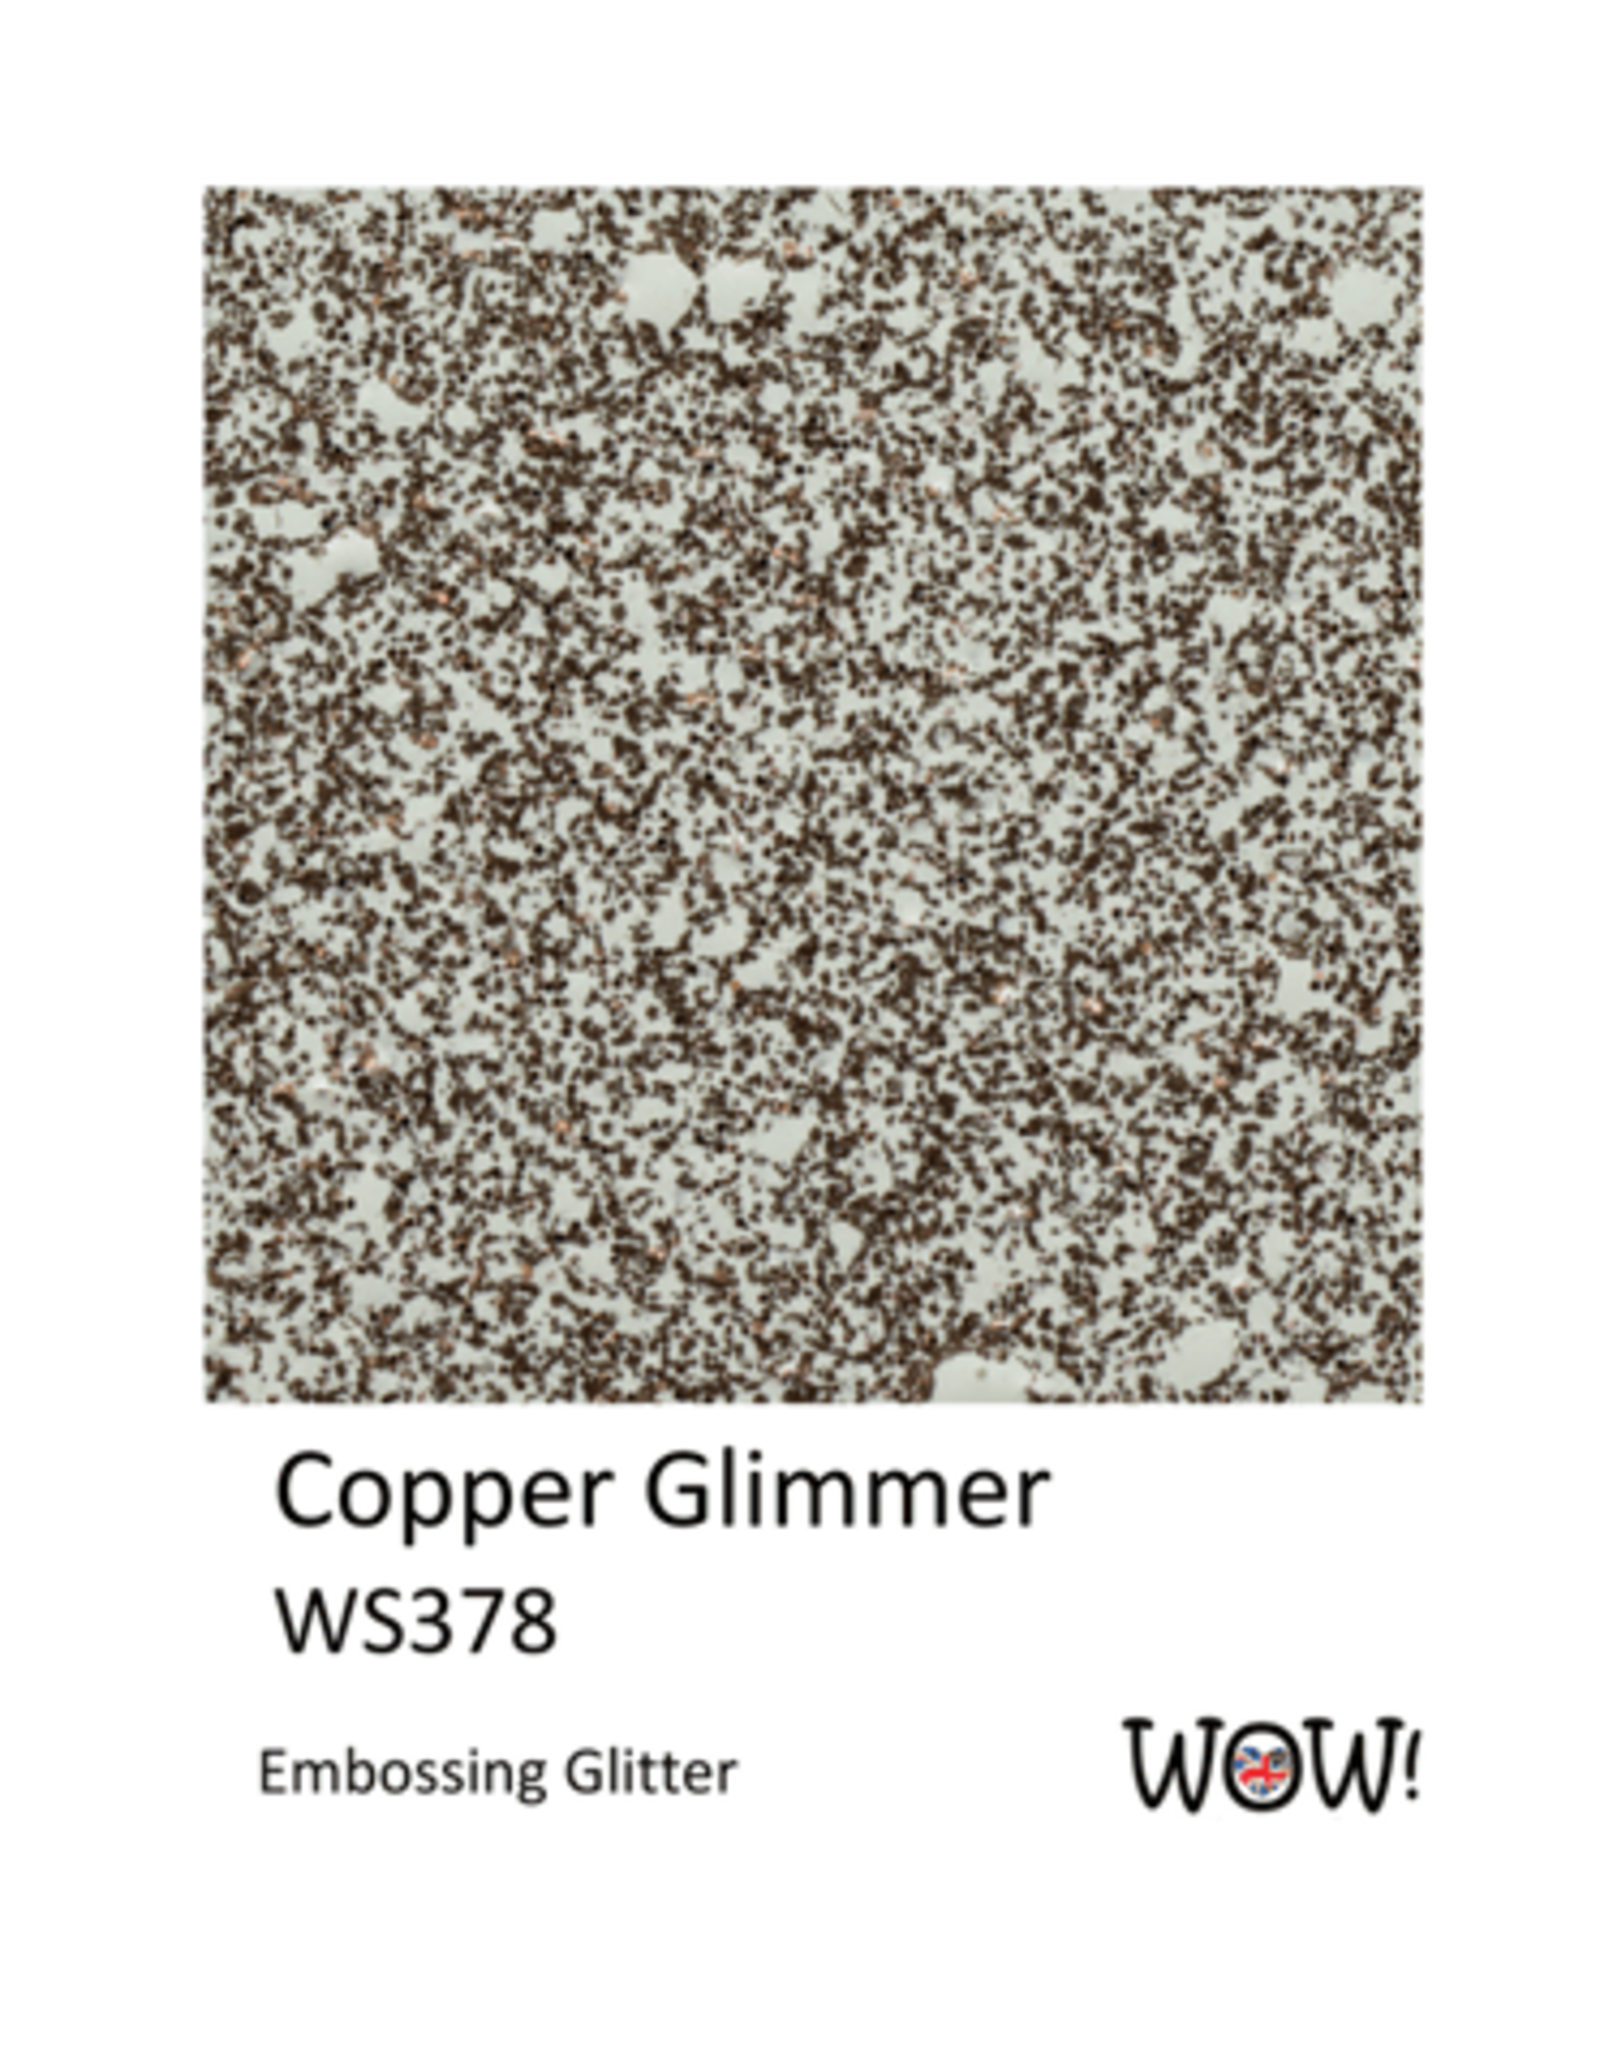 WOW! WOW! JO HERBERT COPPER GLIMMER EMBOSSING GLITTER